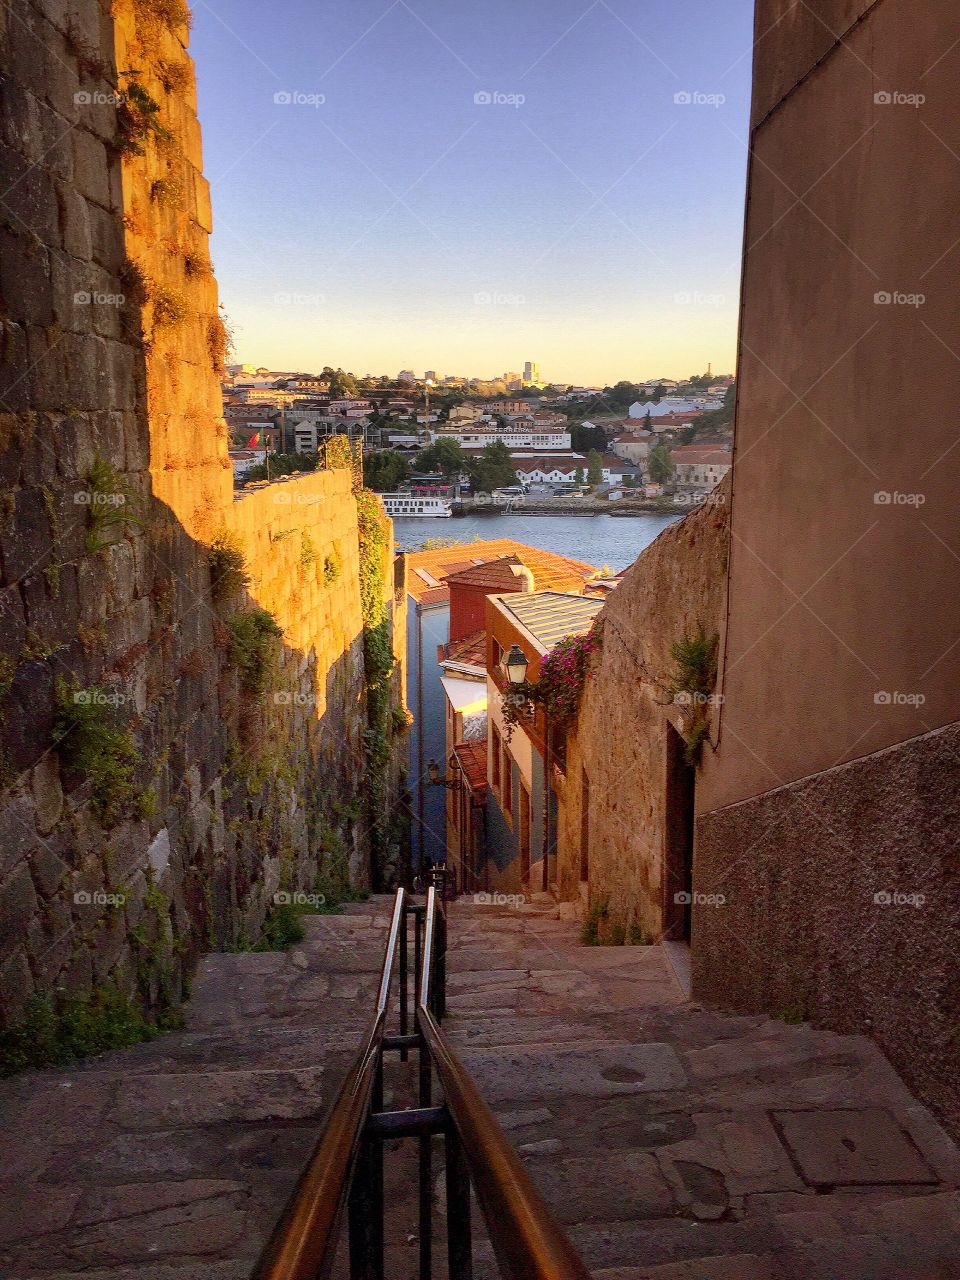 Escadaria de S João novo, porto, Portugal